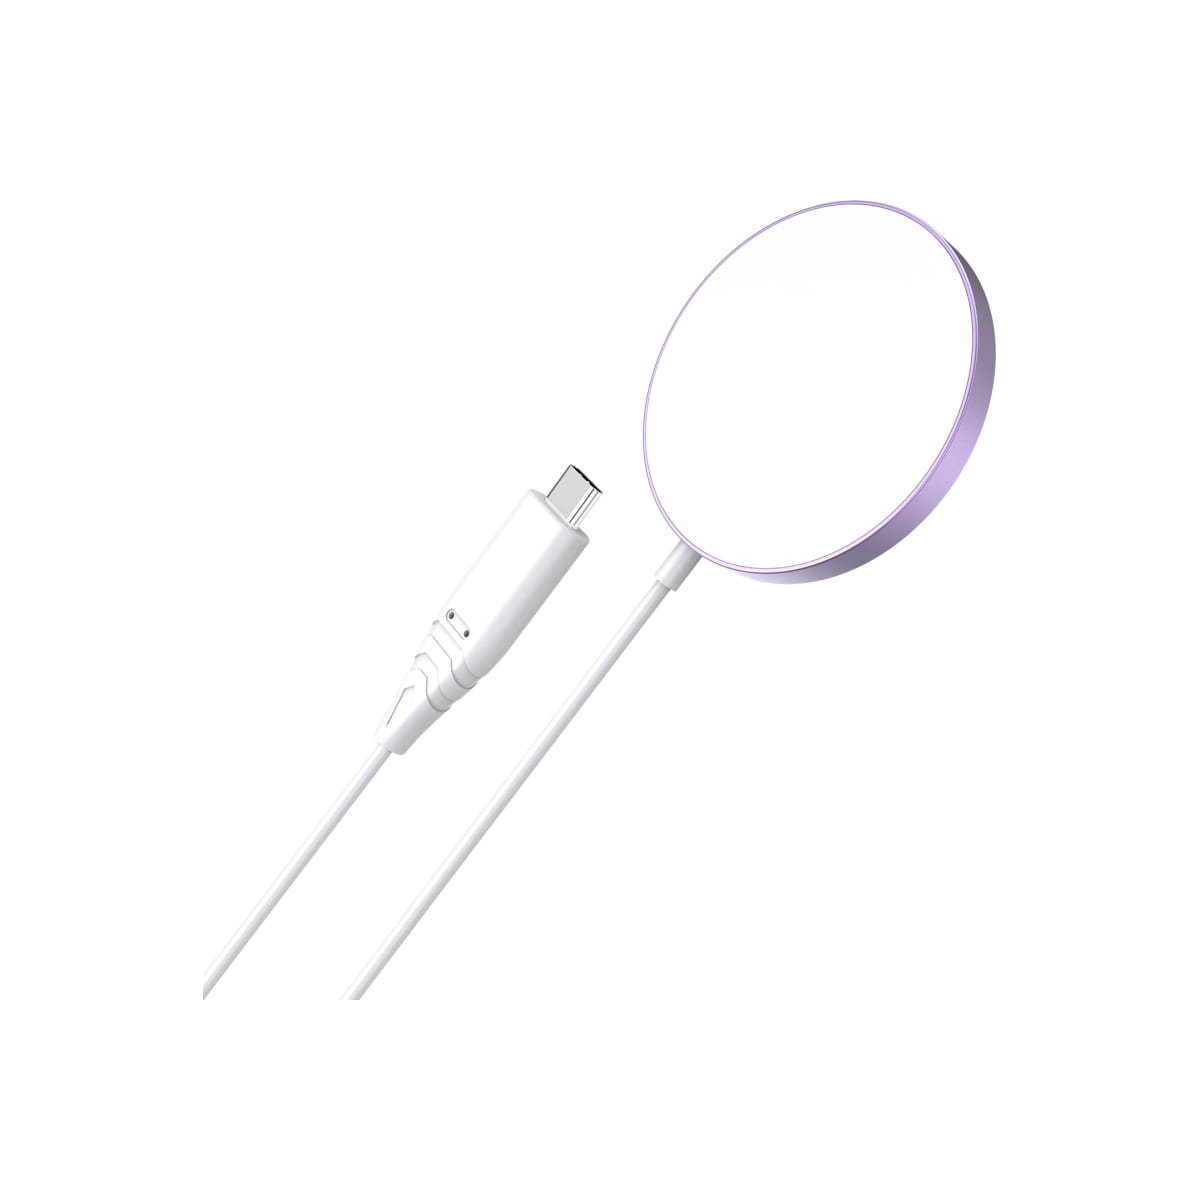 Беспроводное зарядное устройство Choetech 15 Вт с кабелем, цвет розовый (T518-F) блок питания зарядное устройство apple magsafe 2 85w для macbook pro 15 retina a1398 2012 2015 aa